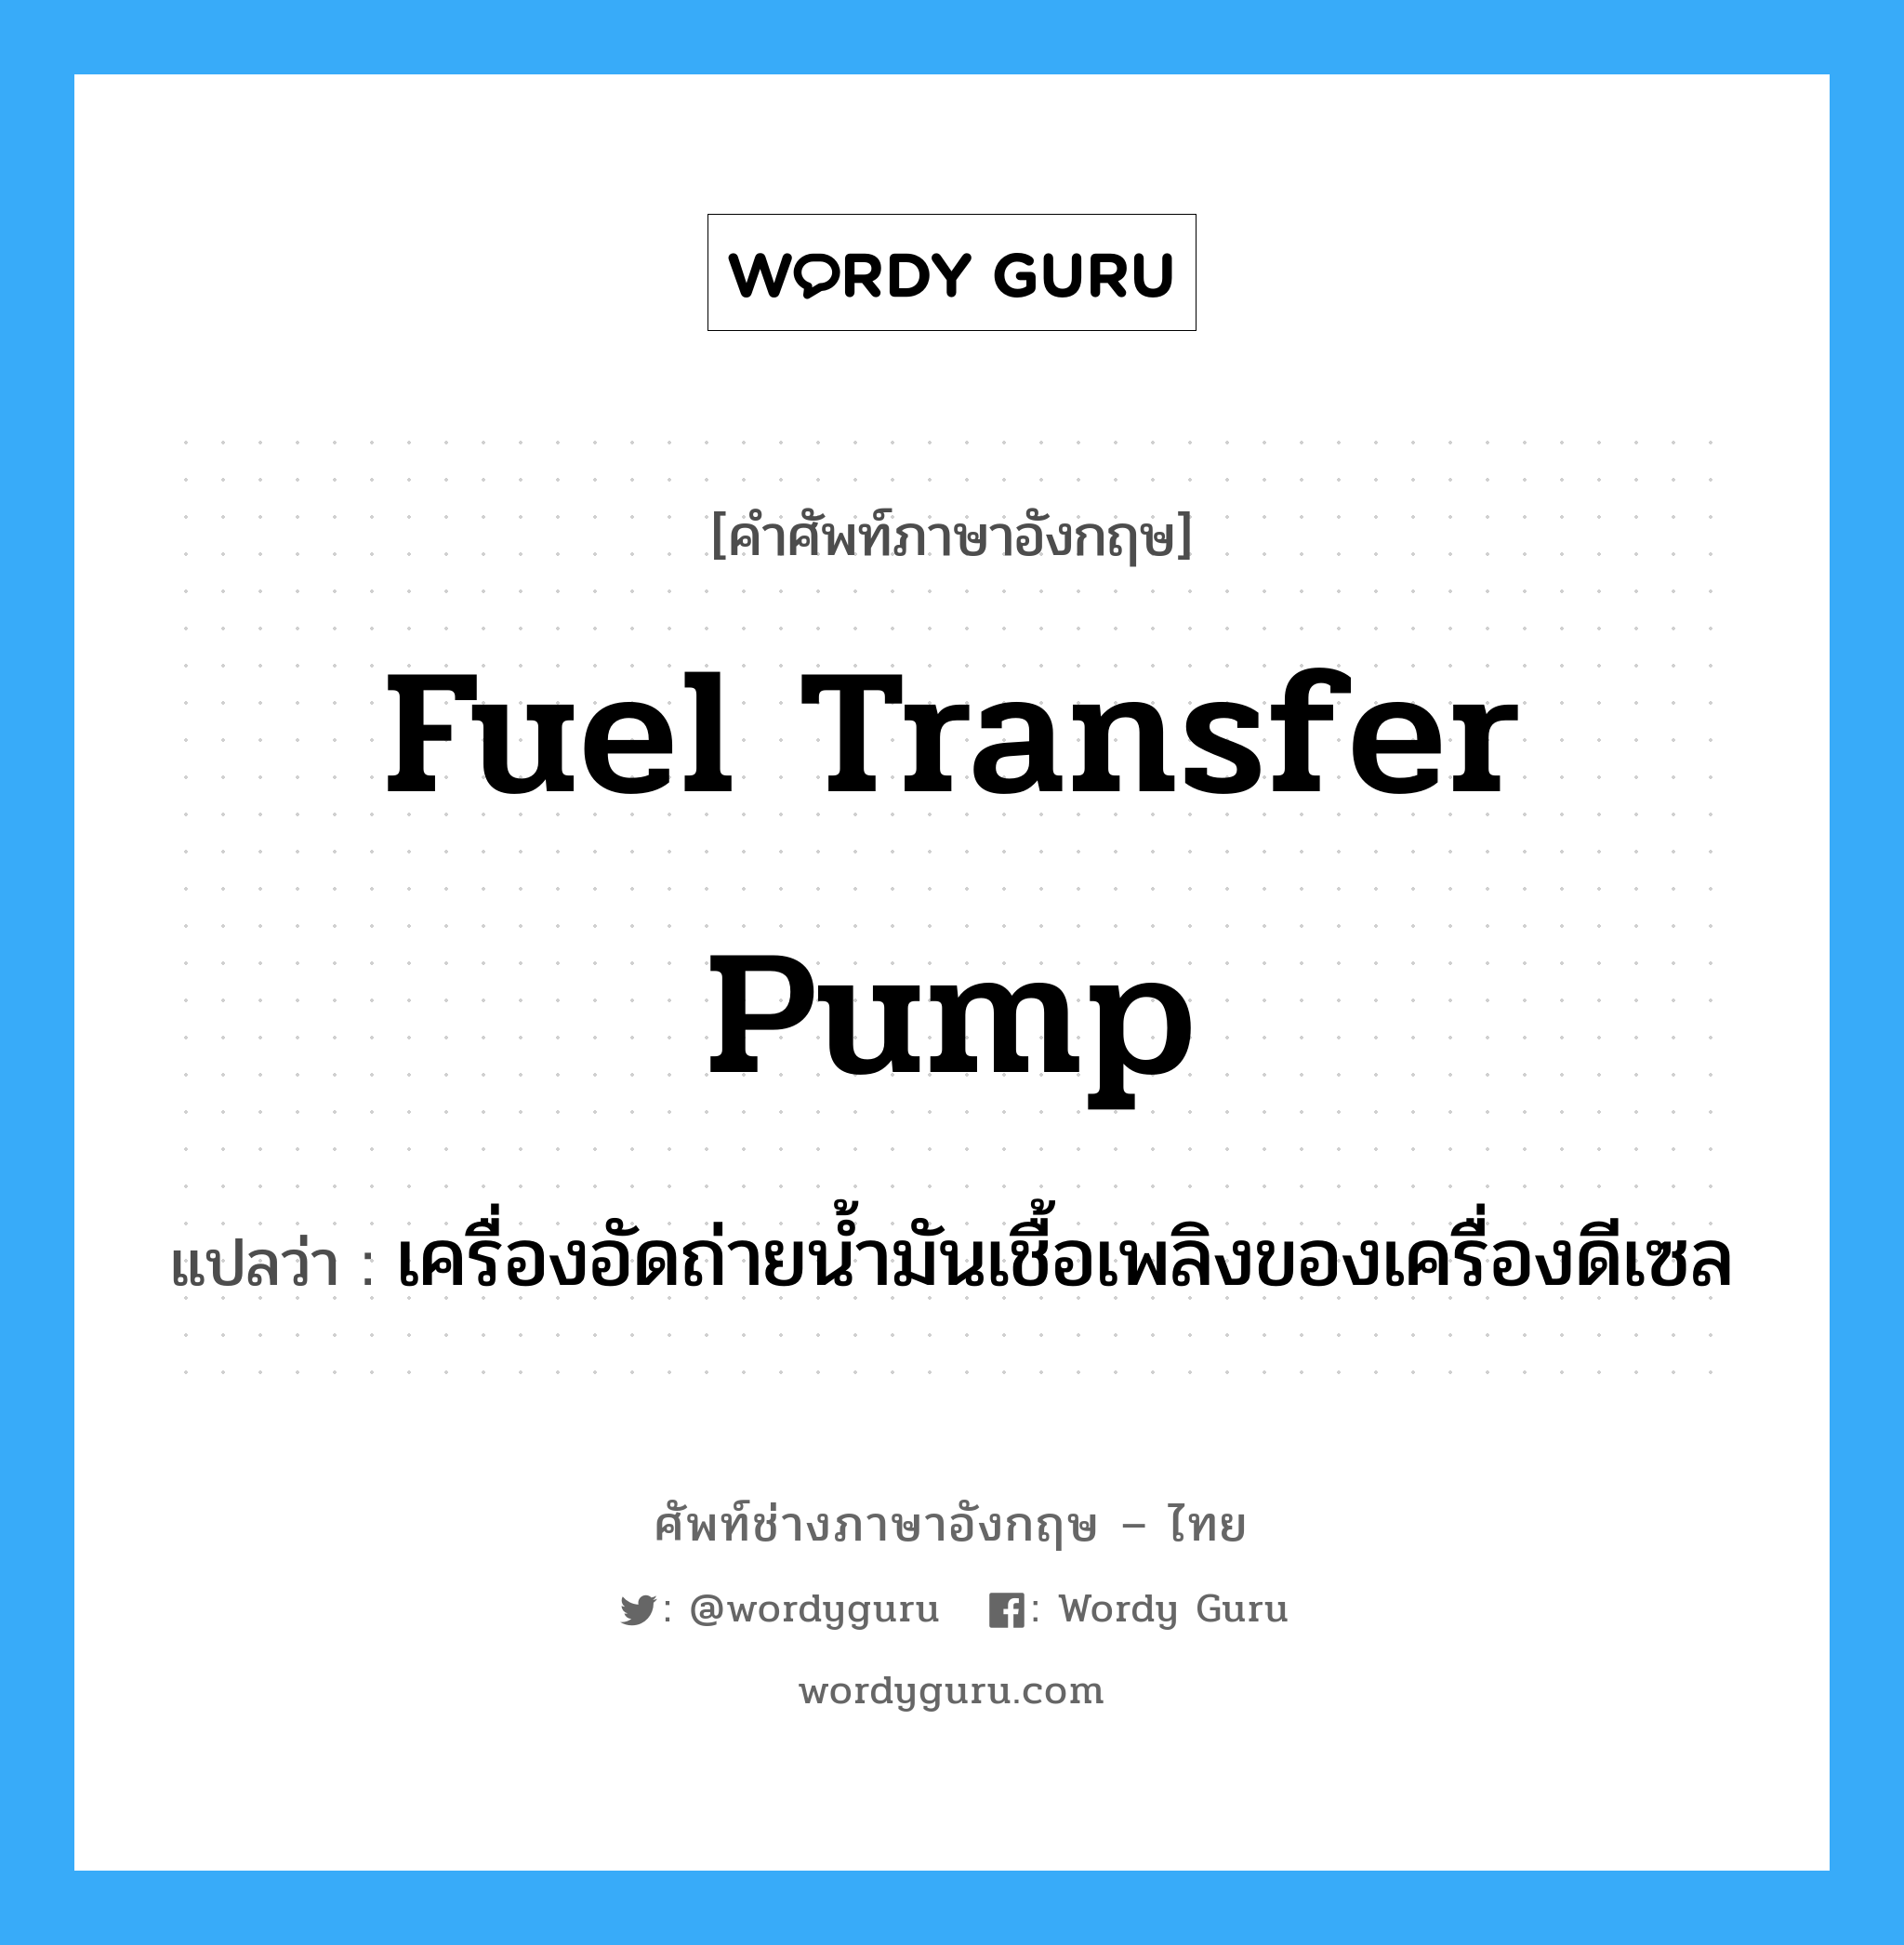 fuel transfer pump แปลว่า?, คำศัพท์ช่างภาษาอังกฤษ - ไทย fuel transfer pump คำศัพท์ภาษาอังกฤษ fuel transfer pump แปลว่า เครื่องอัดถ่ายน้ำมันเชื้อเพลิงของเครื่องดีเซล